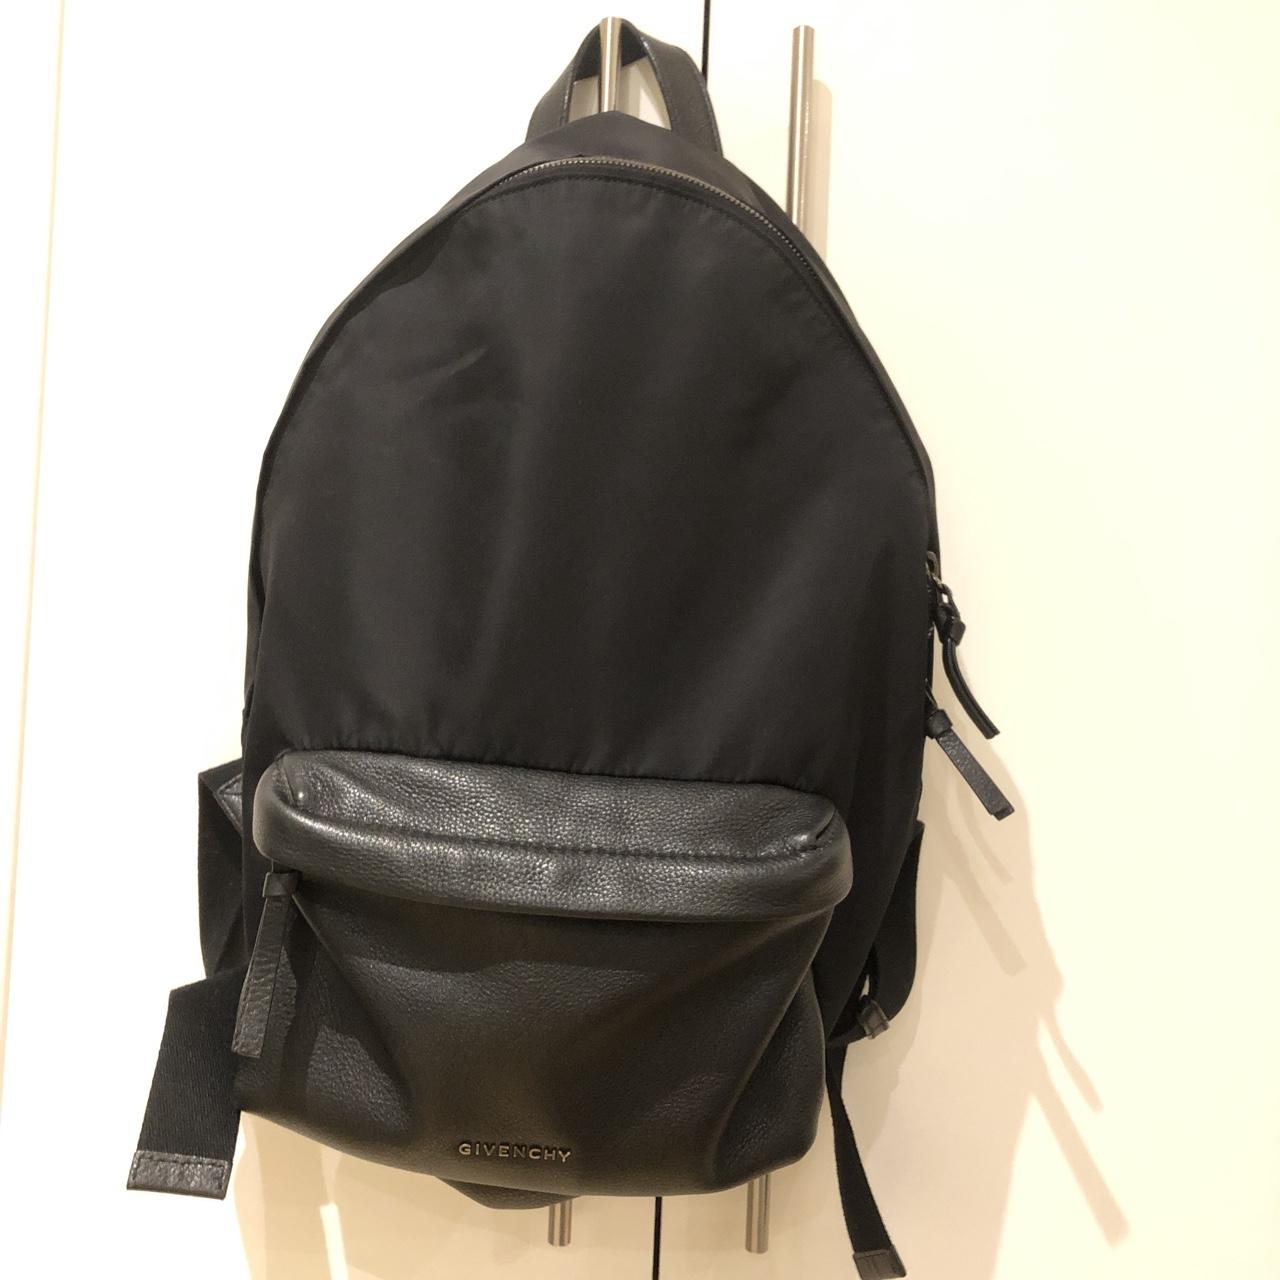 Givenchy Men's Black and Silver Bag | Depop